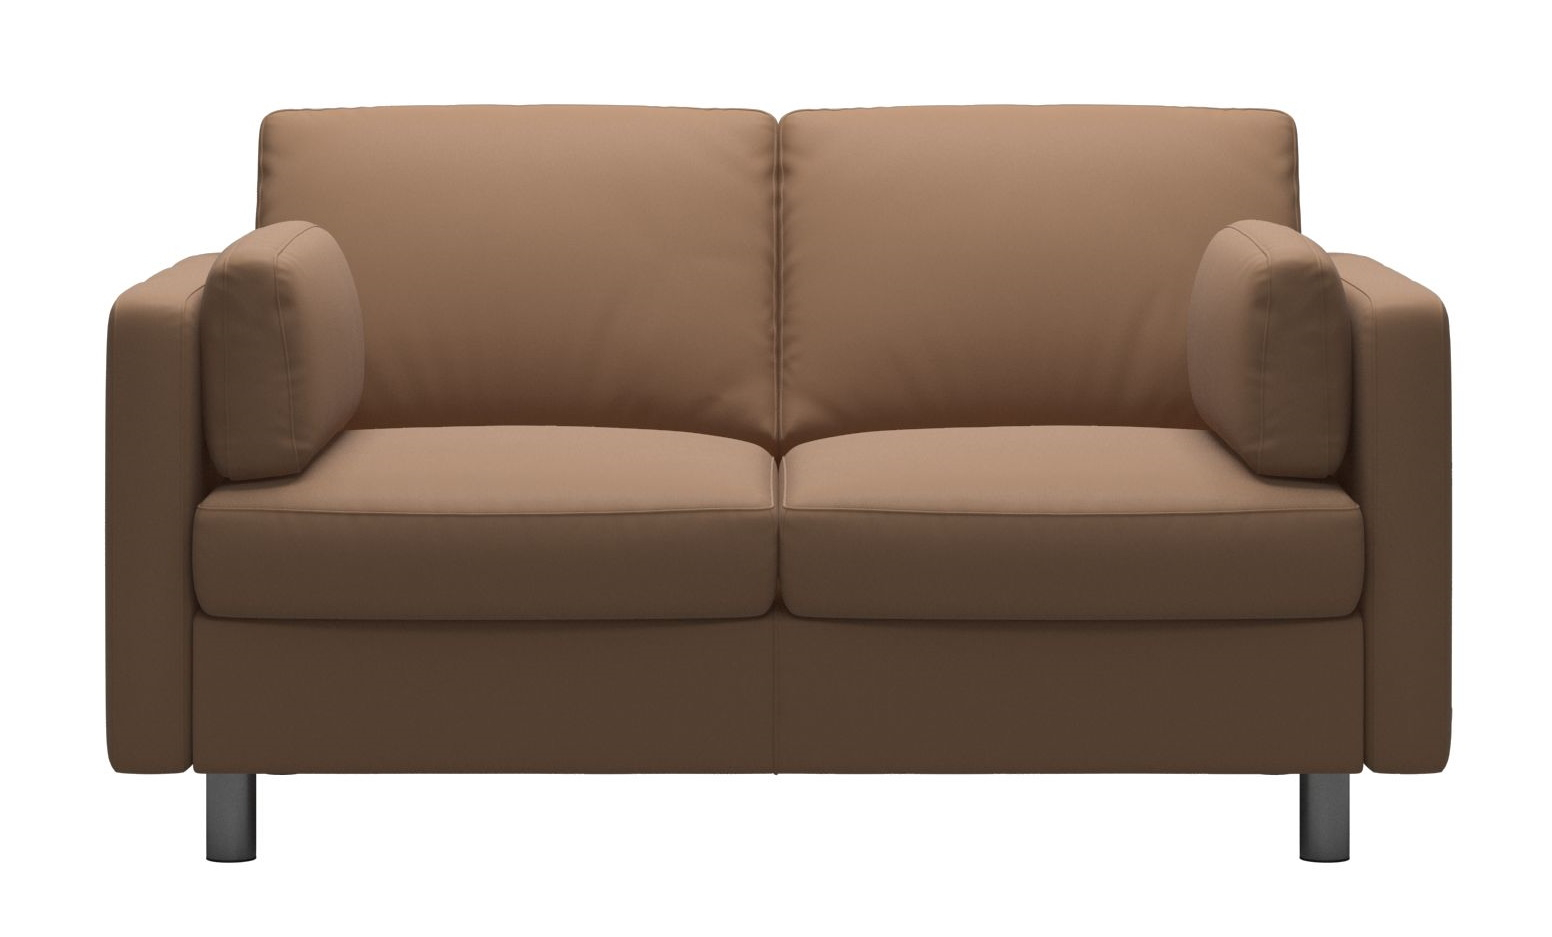 Canapea cu 2 locuri Stressless Emma E600 Classic picioare metalice 11cm piele Batik Latte sensodays.ro